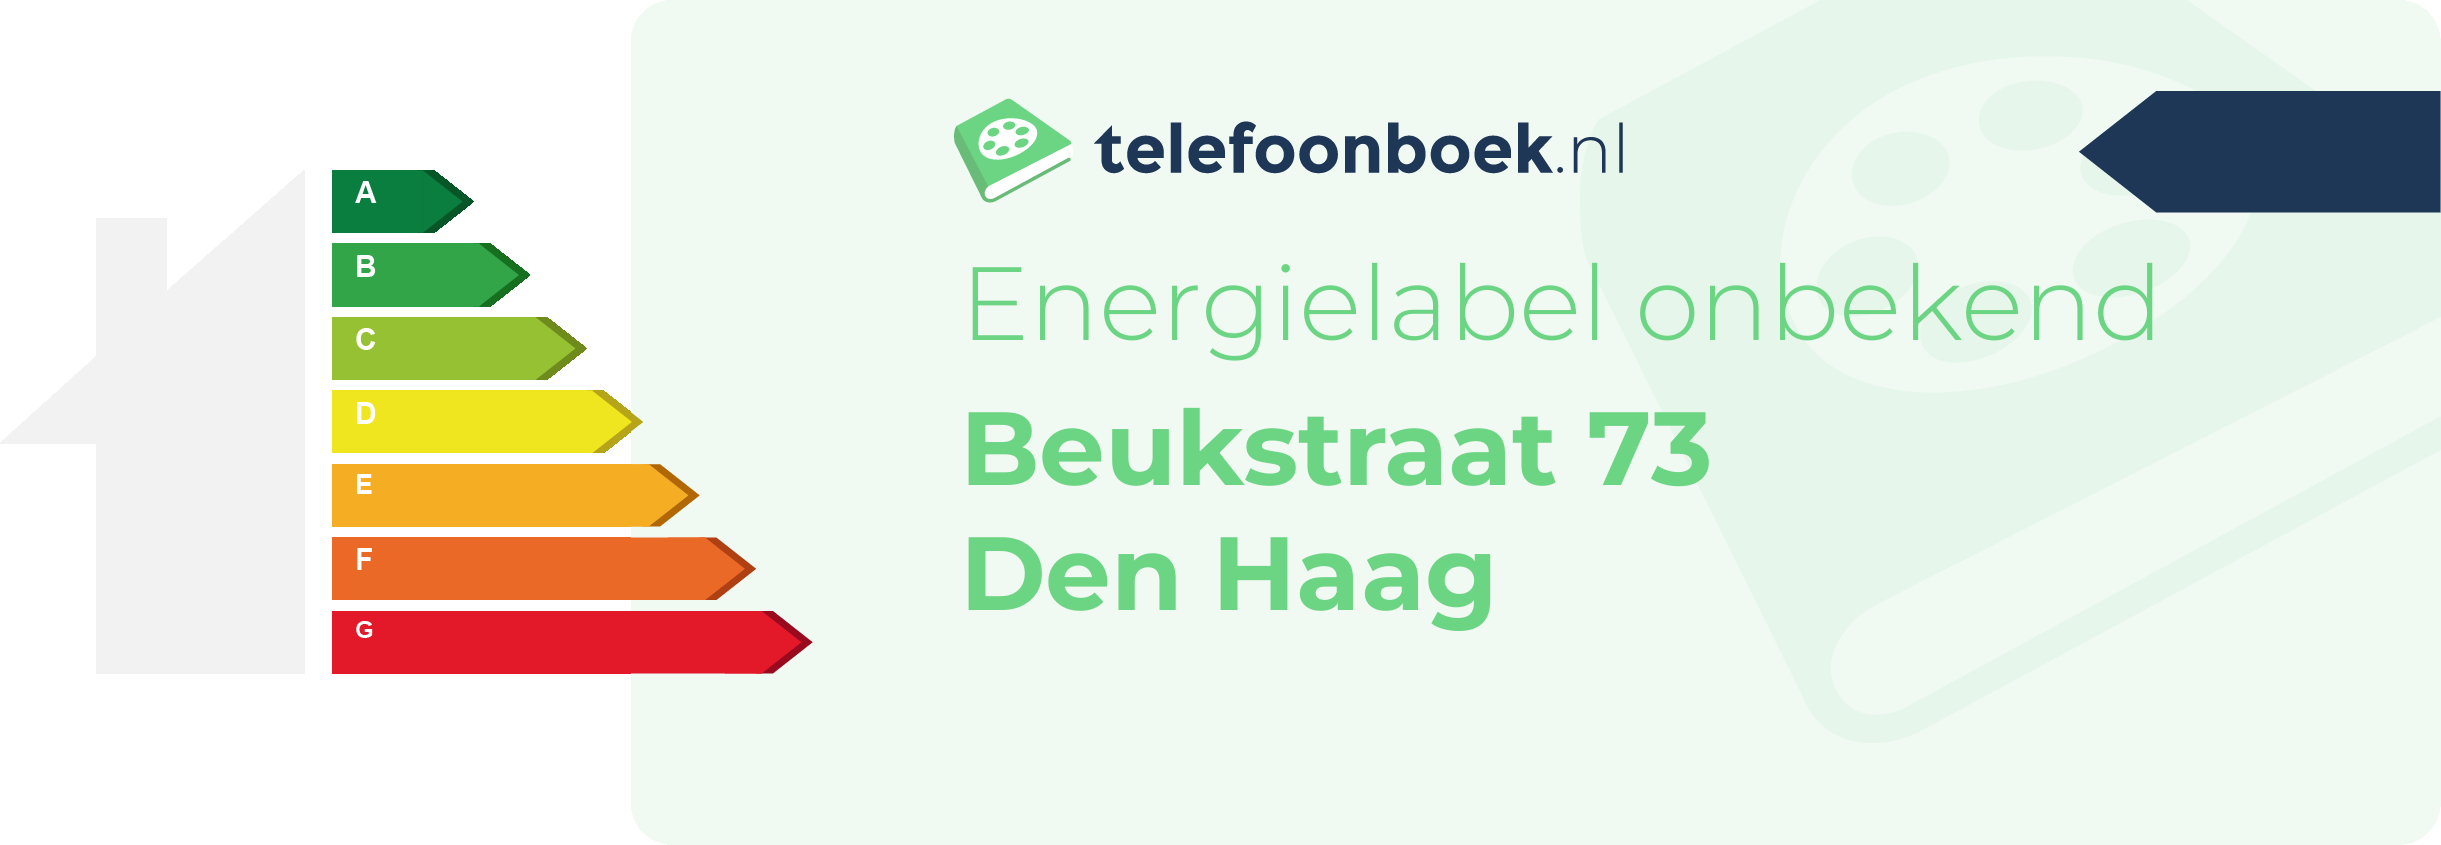 Energielabel Beukstraat 73 Den Haag